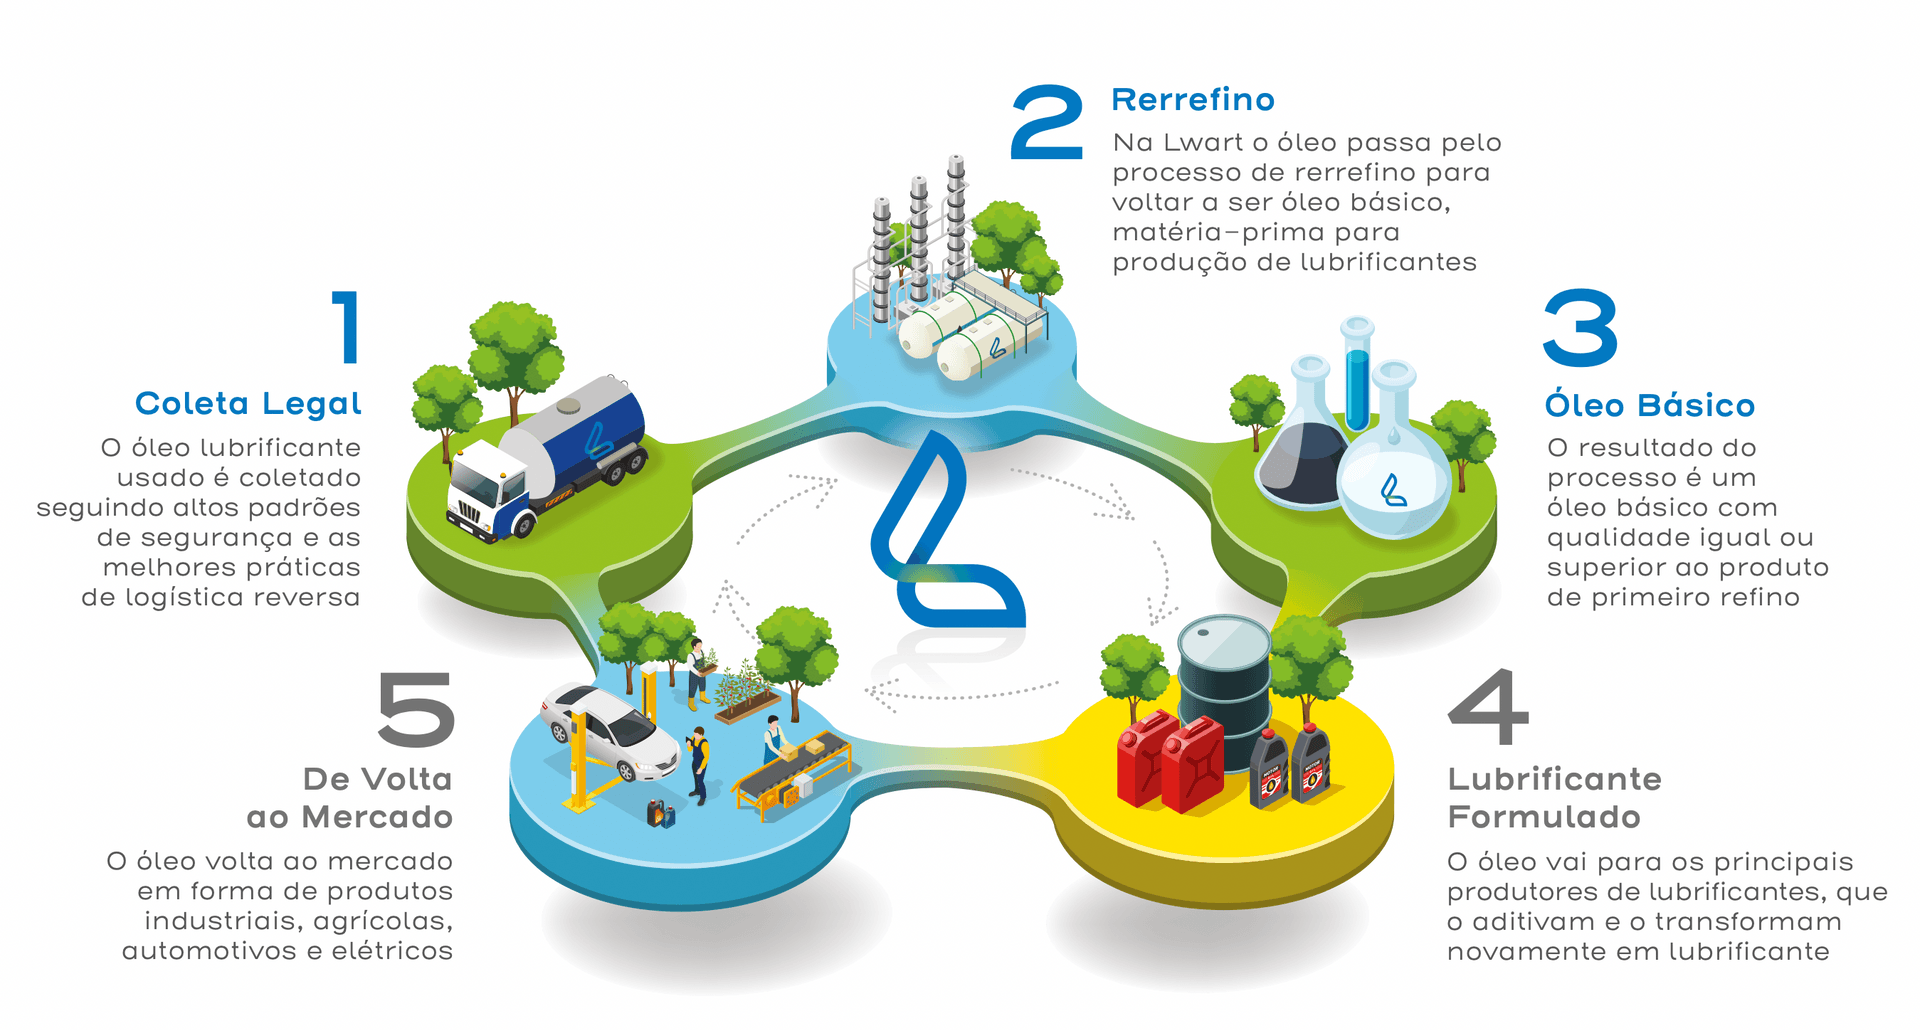 Por meio de um processo produtivo altamente qualificado, transformamos o óleo de rerrefino em
um produto de alta qualidade, contribuindo para a construção de um futuro sustentável.